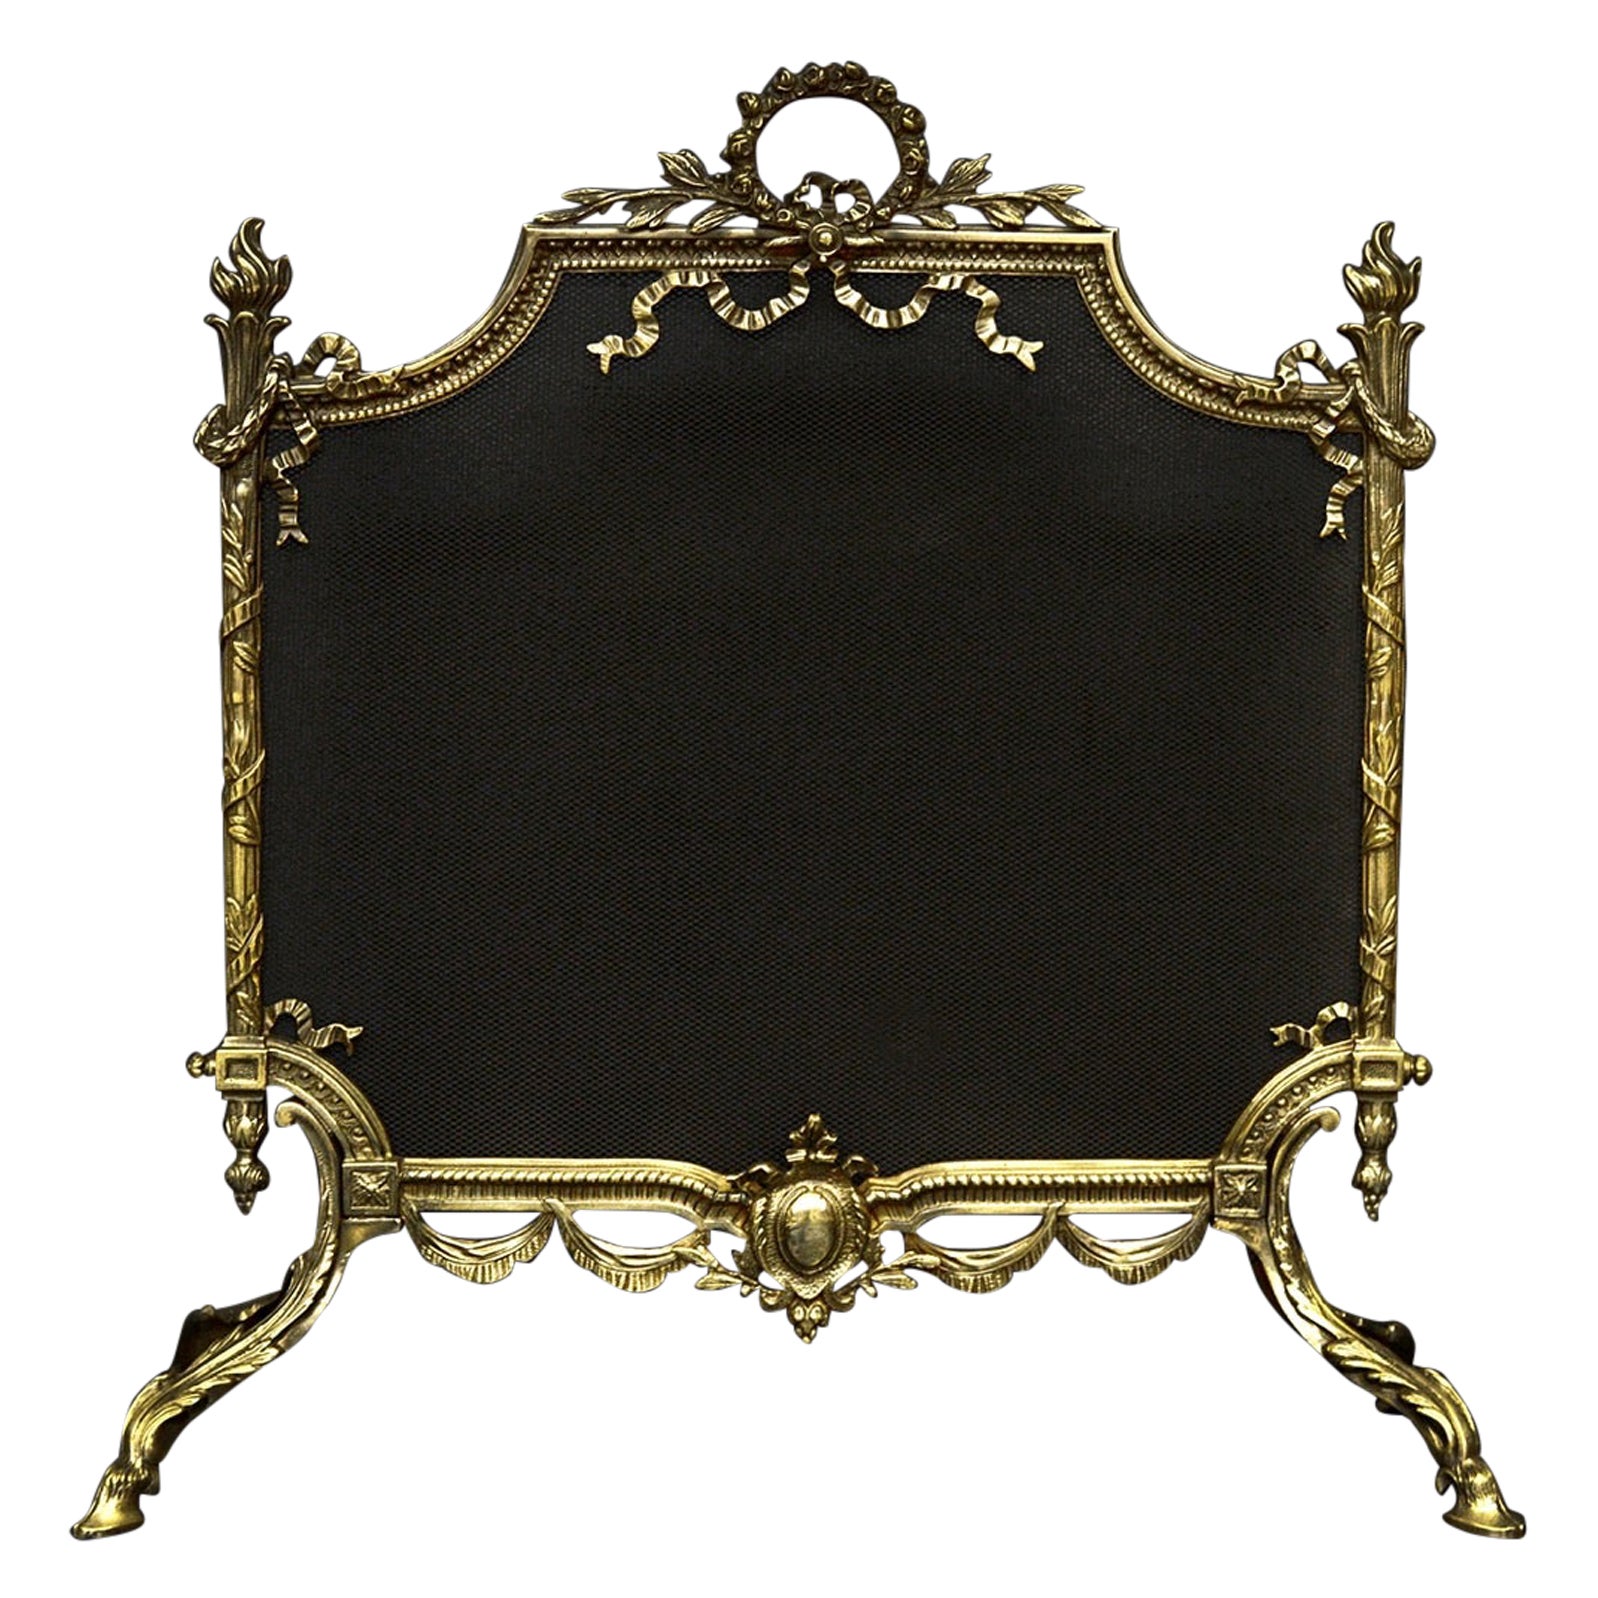 Kaminschirm aus Messing von hoher Qualität im englischen Regency-Stil des 19. Jahrhunderts